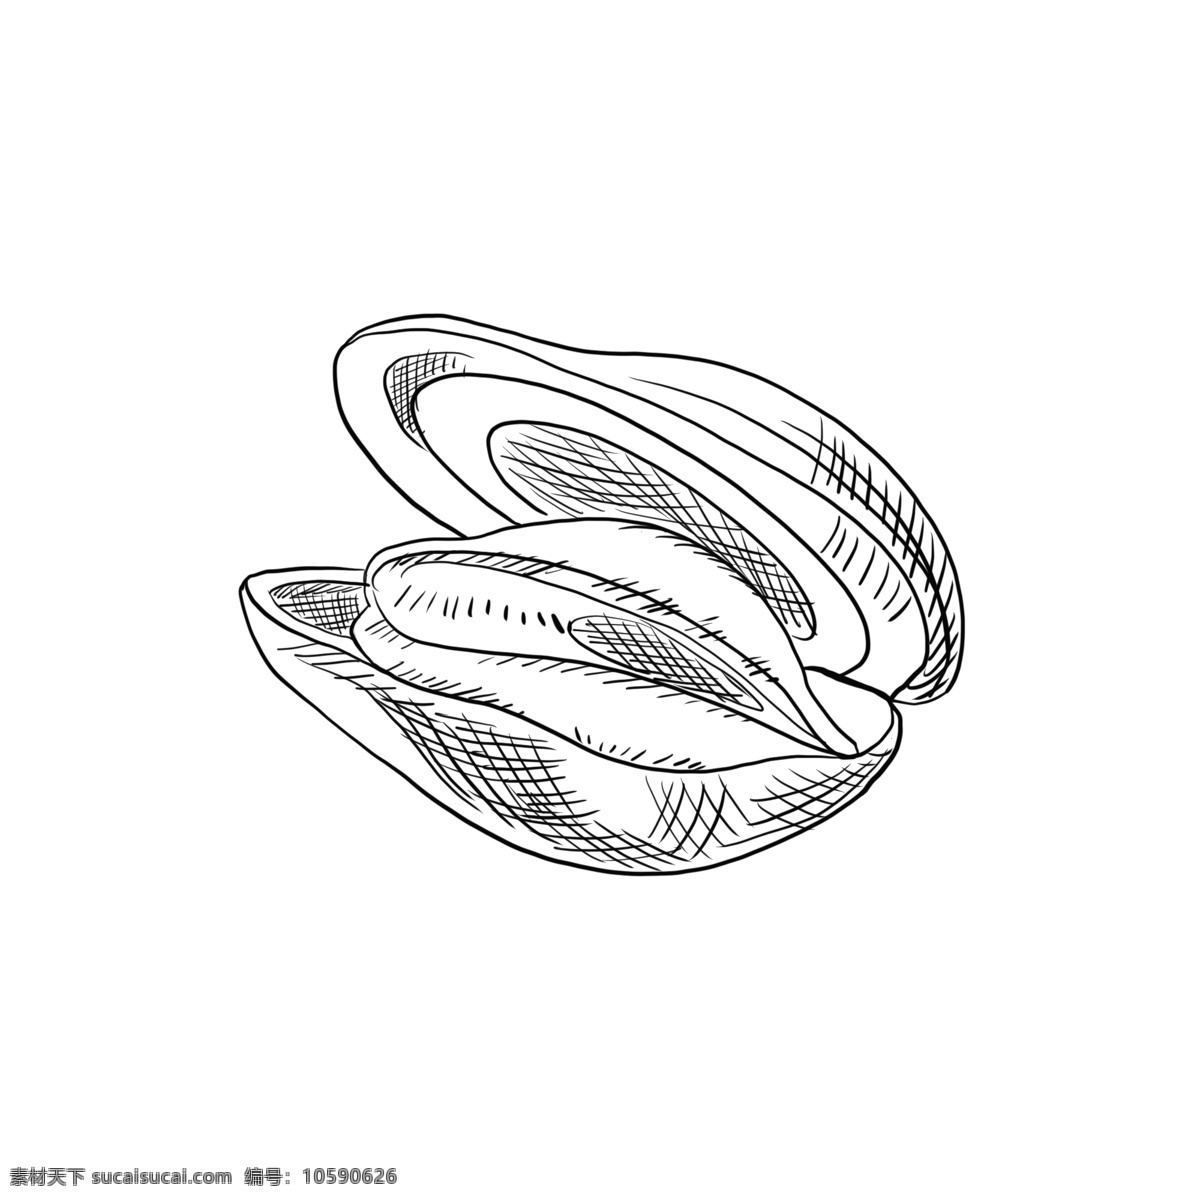 贝壳 类 手绘 简 笔画 壳类 蛤蜊 鹬蚌 海鲜 海洋 海鲜食物 海洋食品 线稿 黑白 卡通 装饰 配图 简笔画